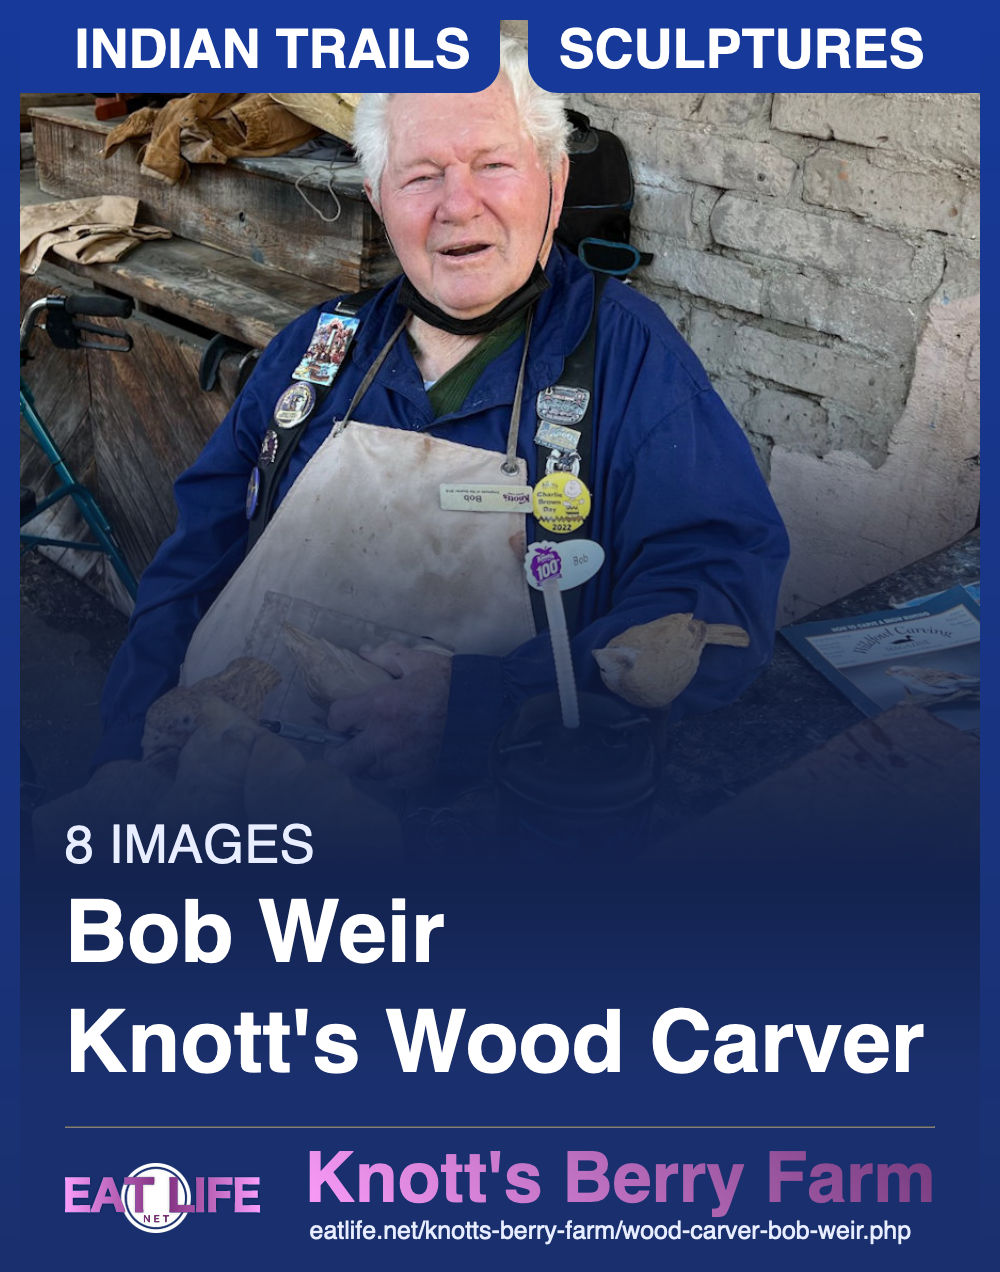 Wood Carver Bob Weir